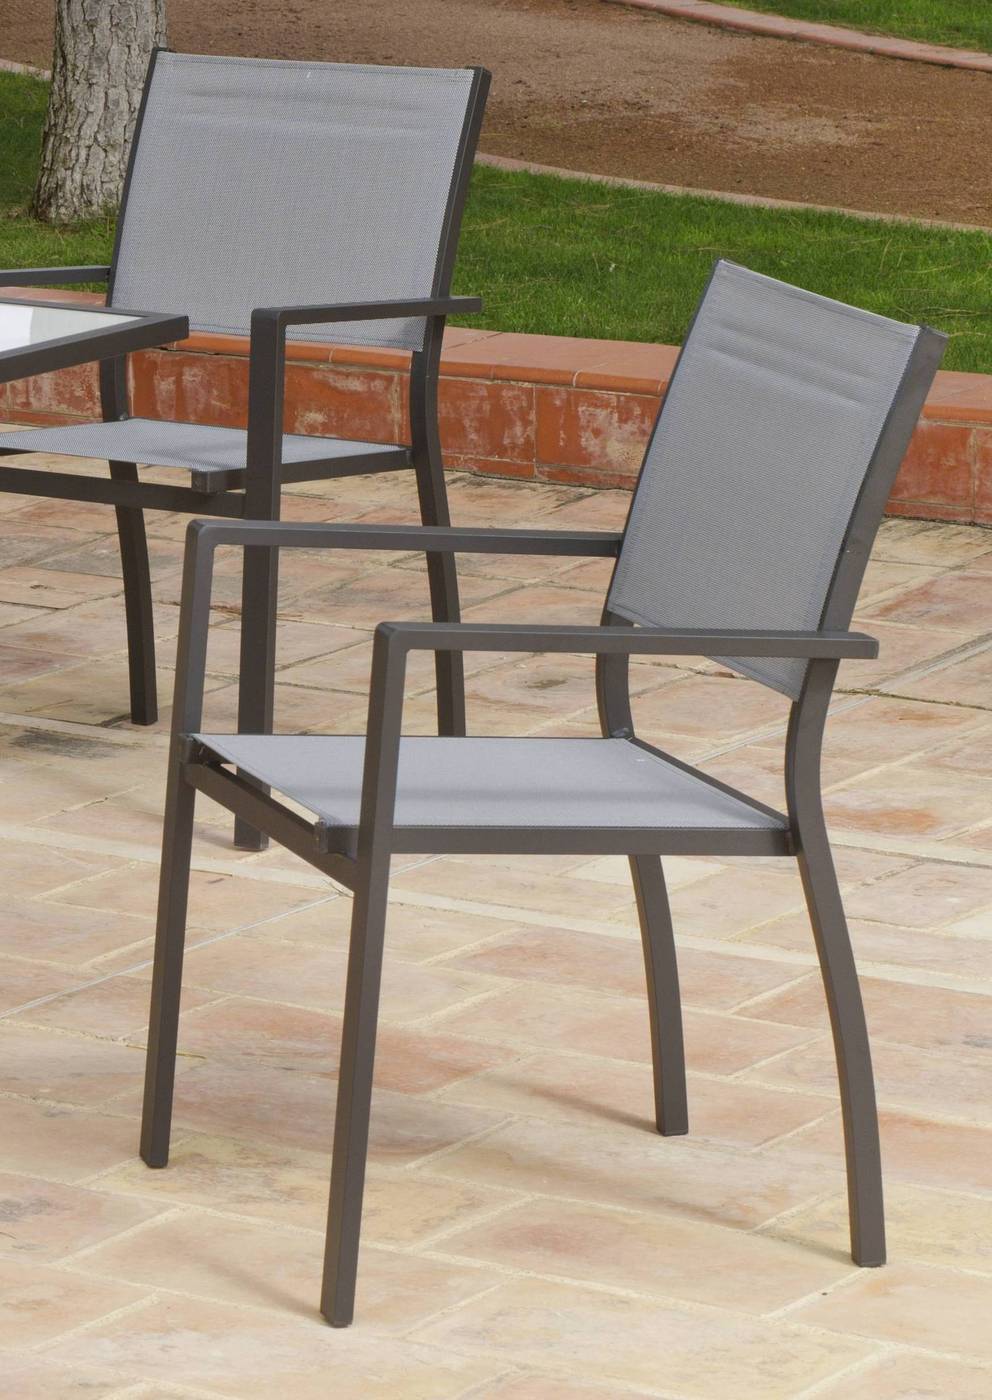 Set Aluminio Horizon Ext. - Conjunto de aluminio color antracita: mesa extensible 150-200 cm. + 6 sillones apilables de alumino y textilen